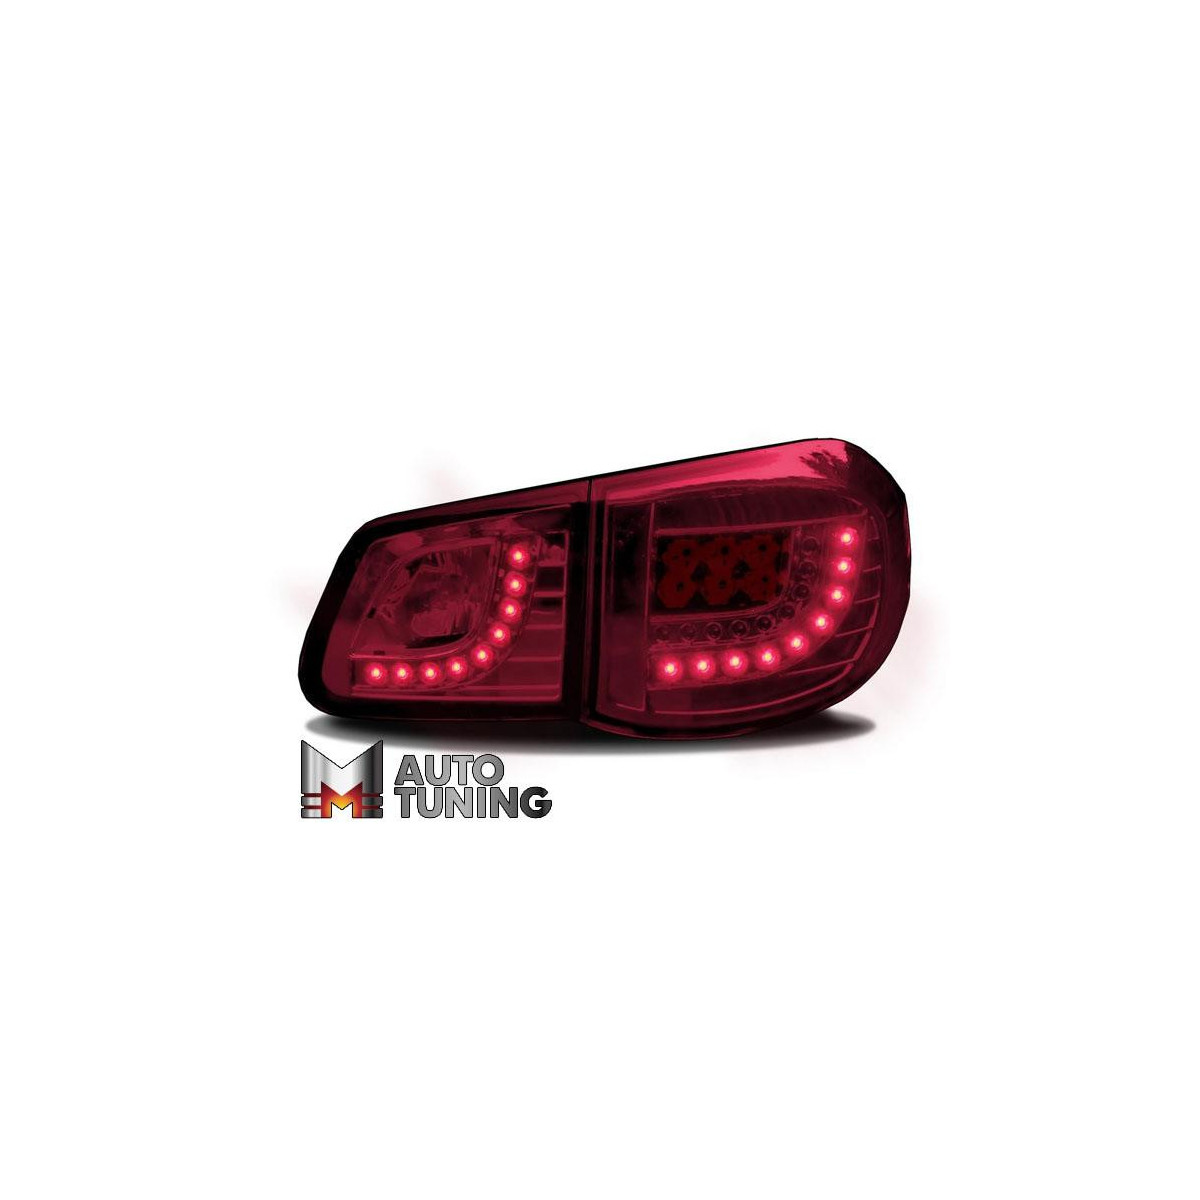 LAMPY TYLNE LED VW TIGUAN 07-11 DIODOWE CZERWONE